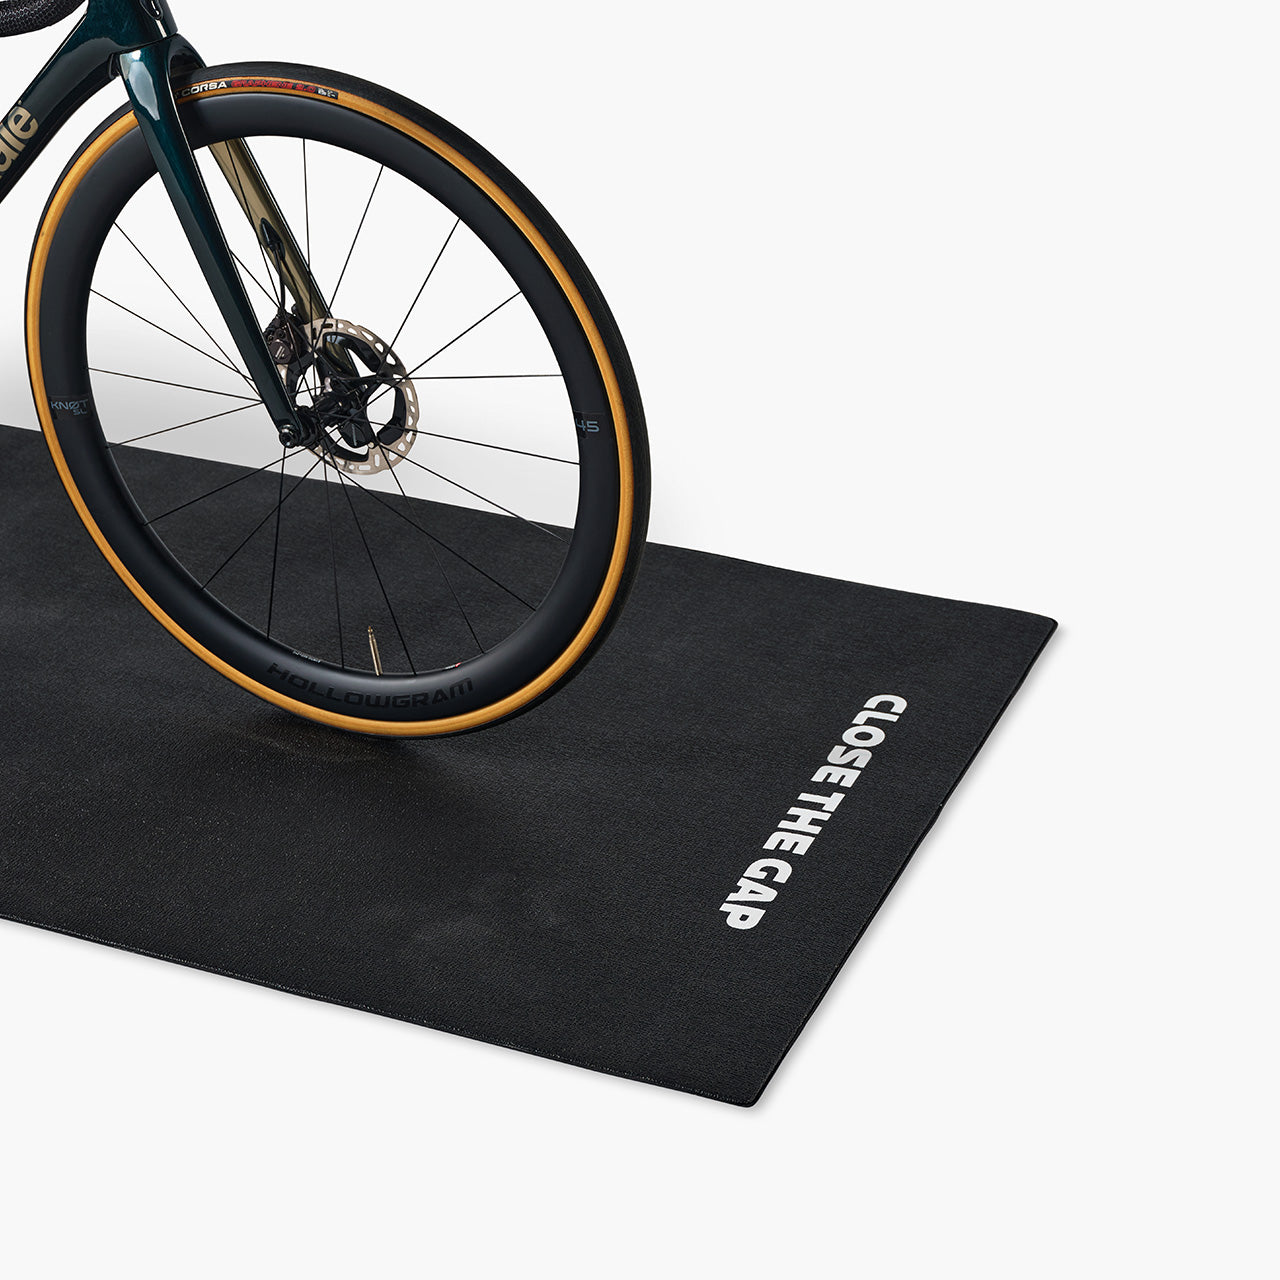 Les 5 meilleurs tapis pour home trainer - Box vélo